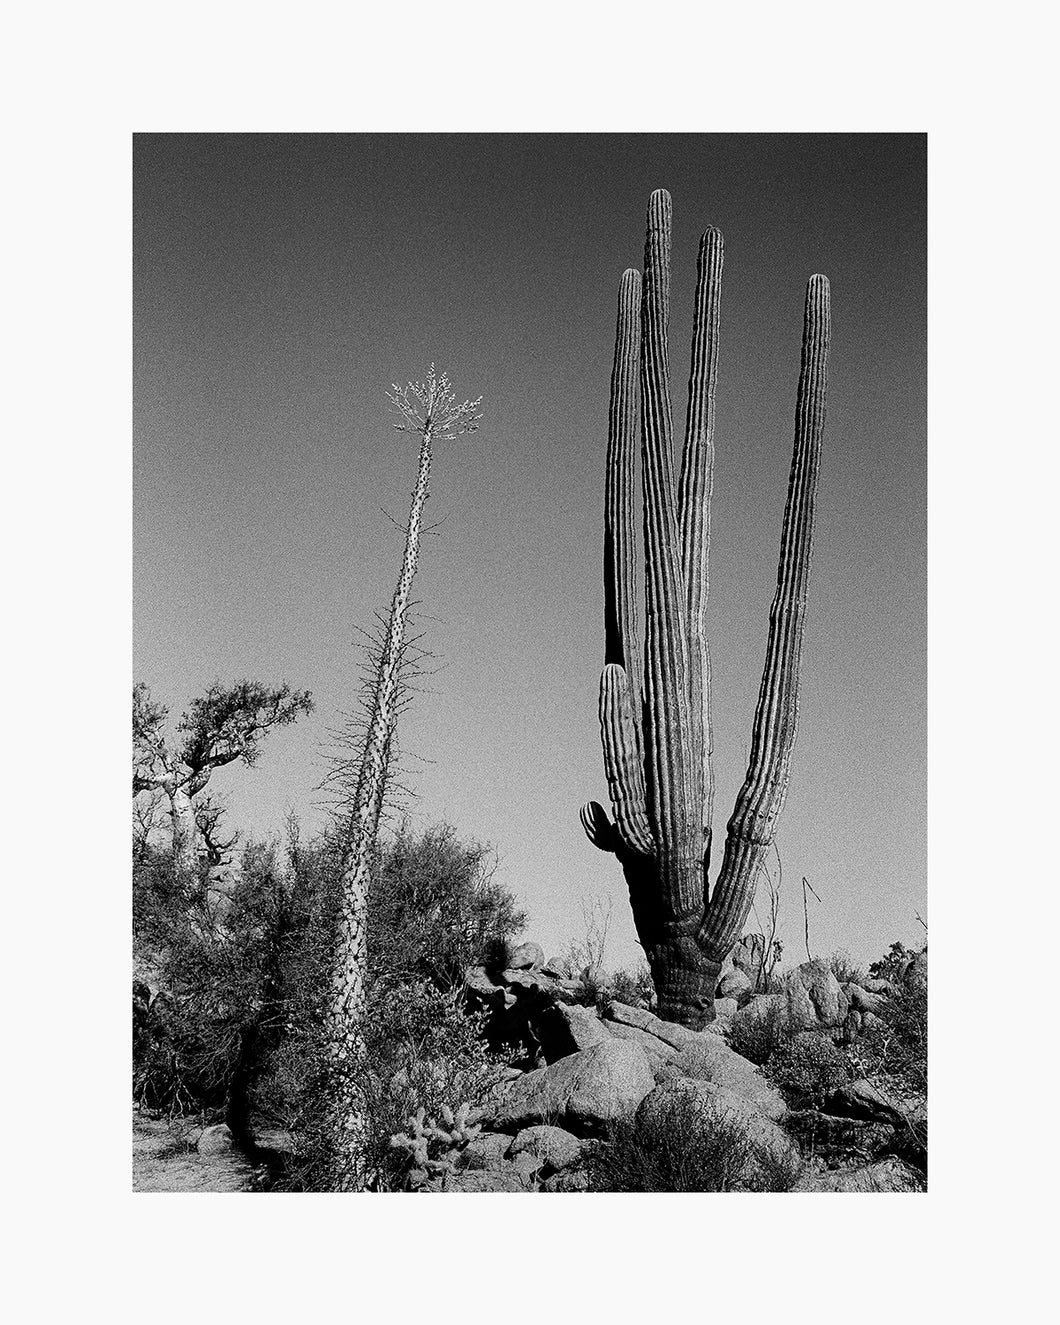 Baja Cactus